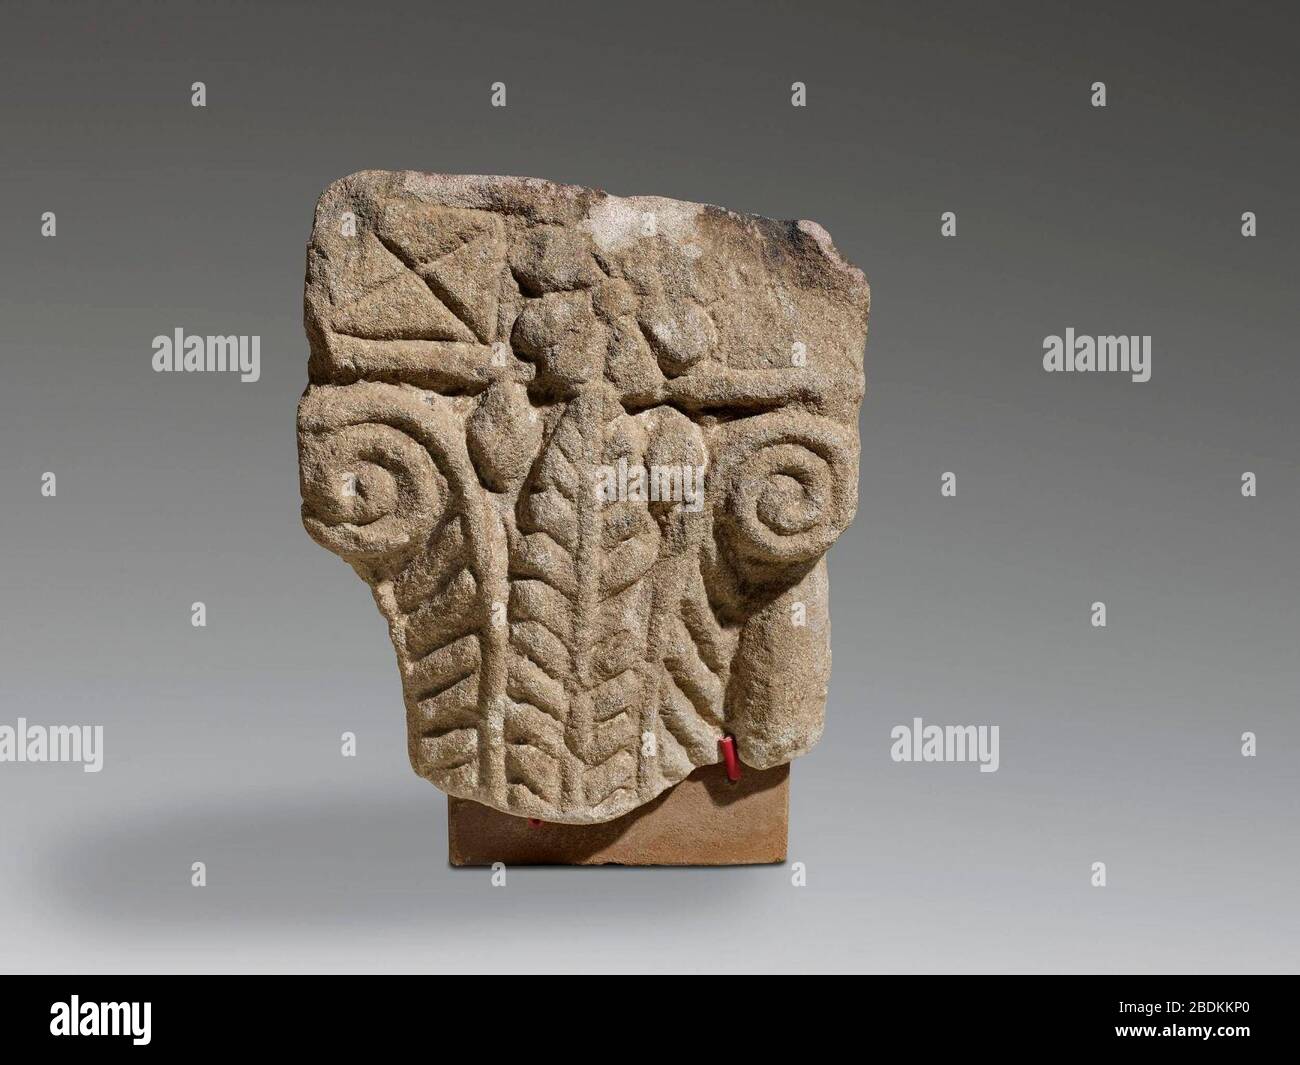 Górny fragment węgara z dekoracją w formie kapitelu, warsztat nubijski. Stock Photo